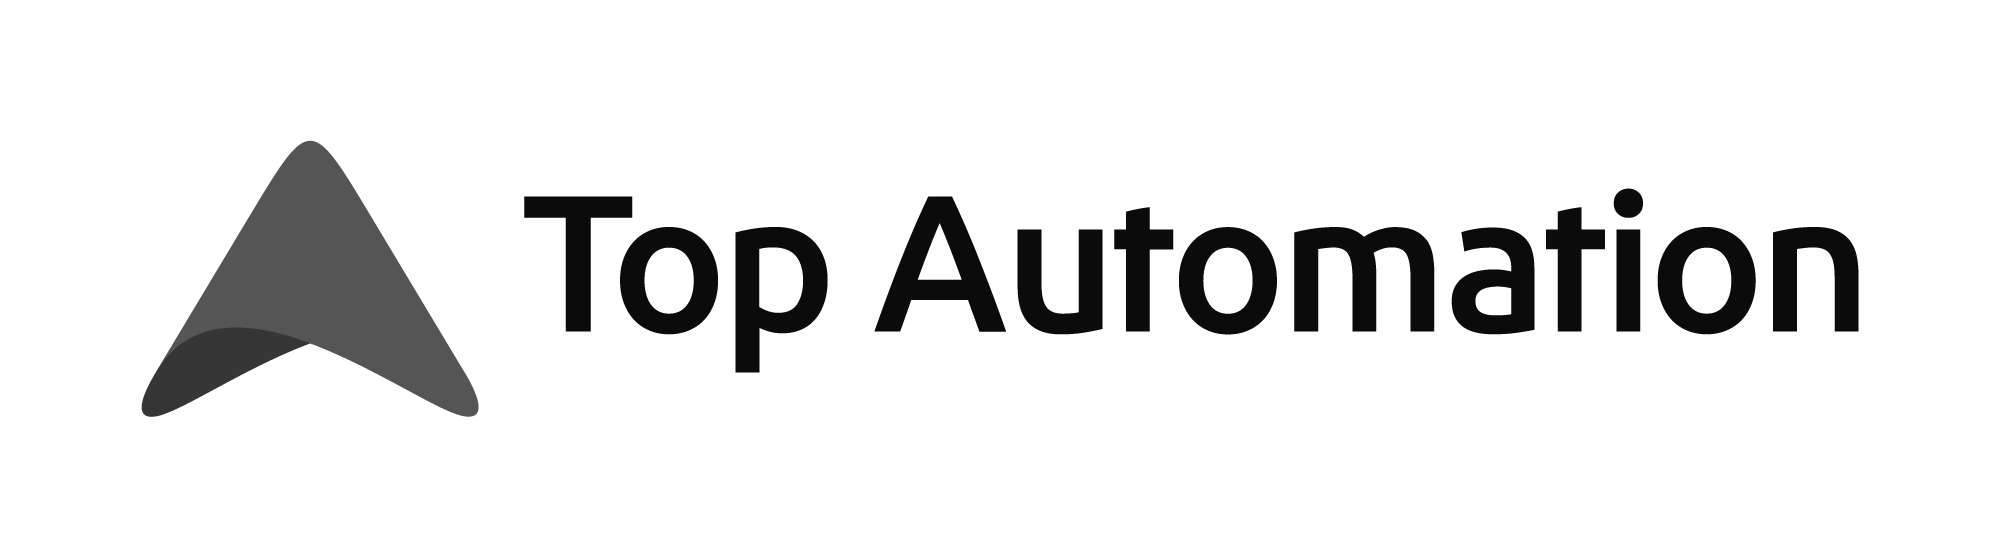 Top Automationin logo mustavalkoisena